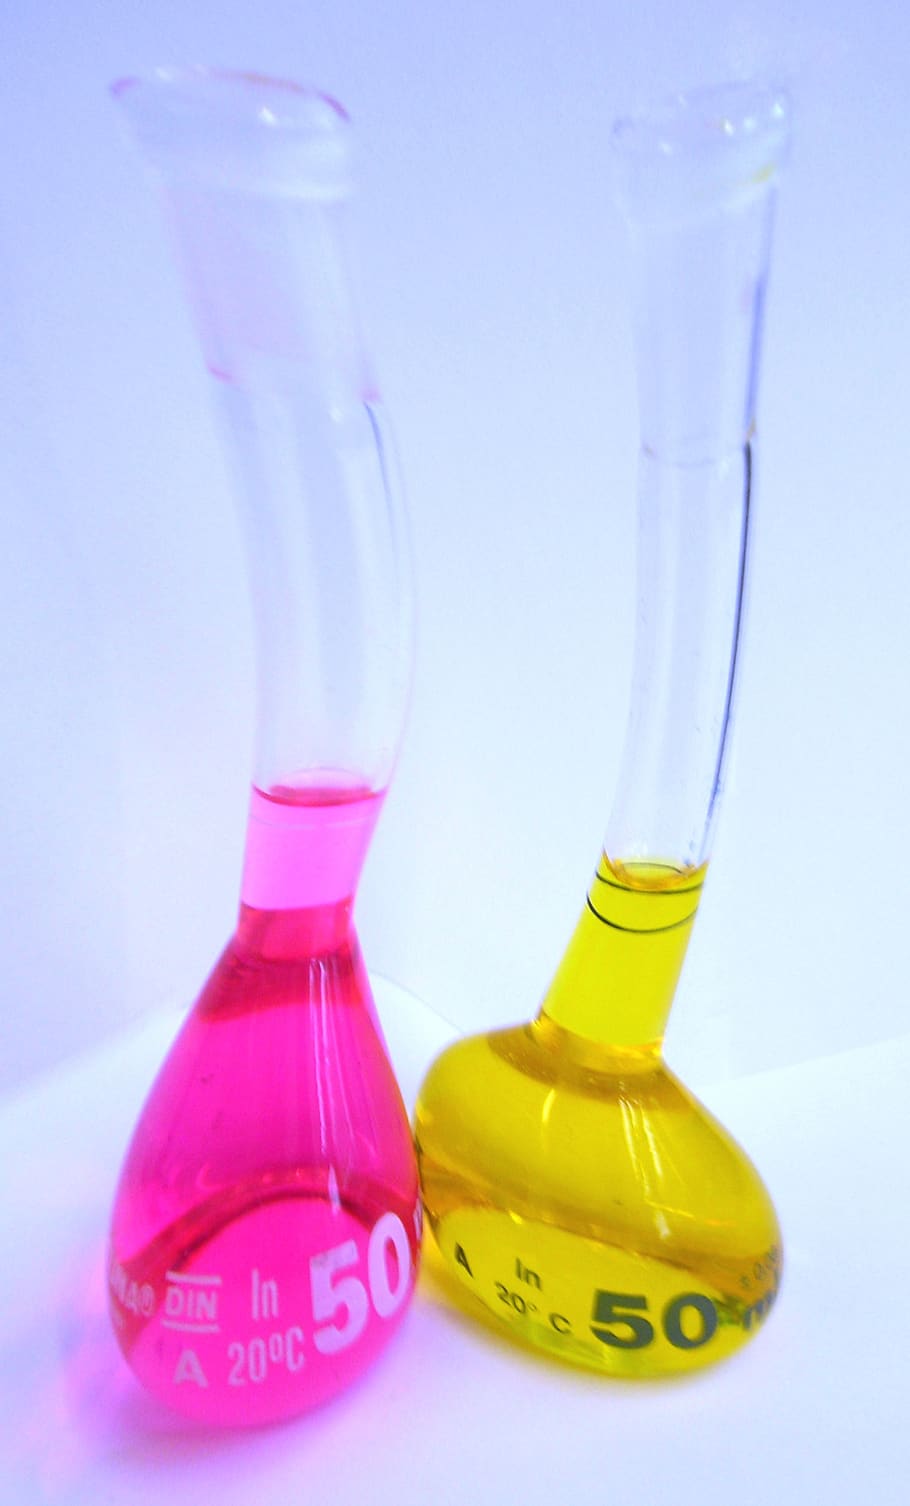 chemistry, laboratory, toxic, glass, piston, red, yellow, interactive, cheerful, studio shot